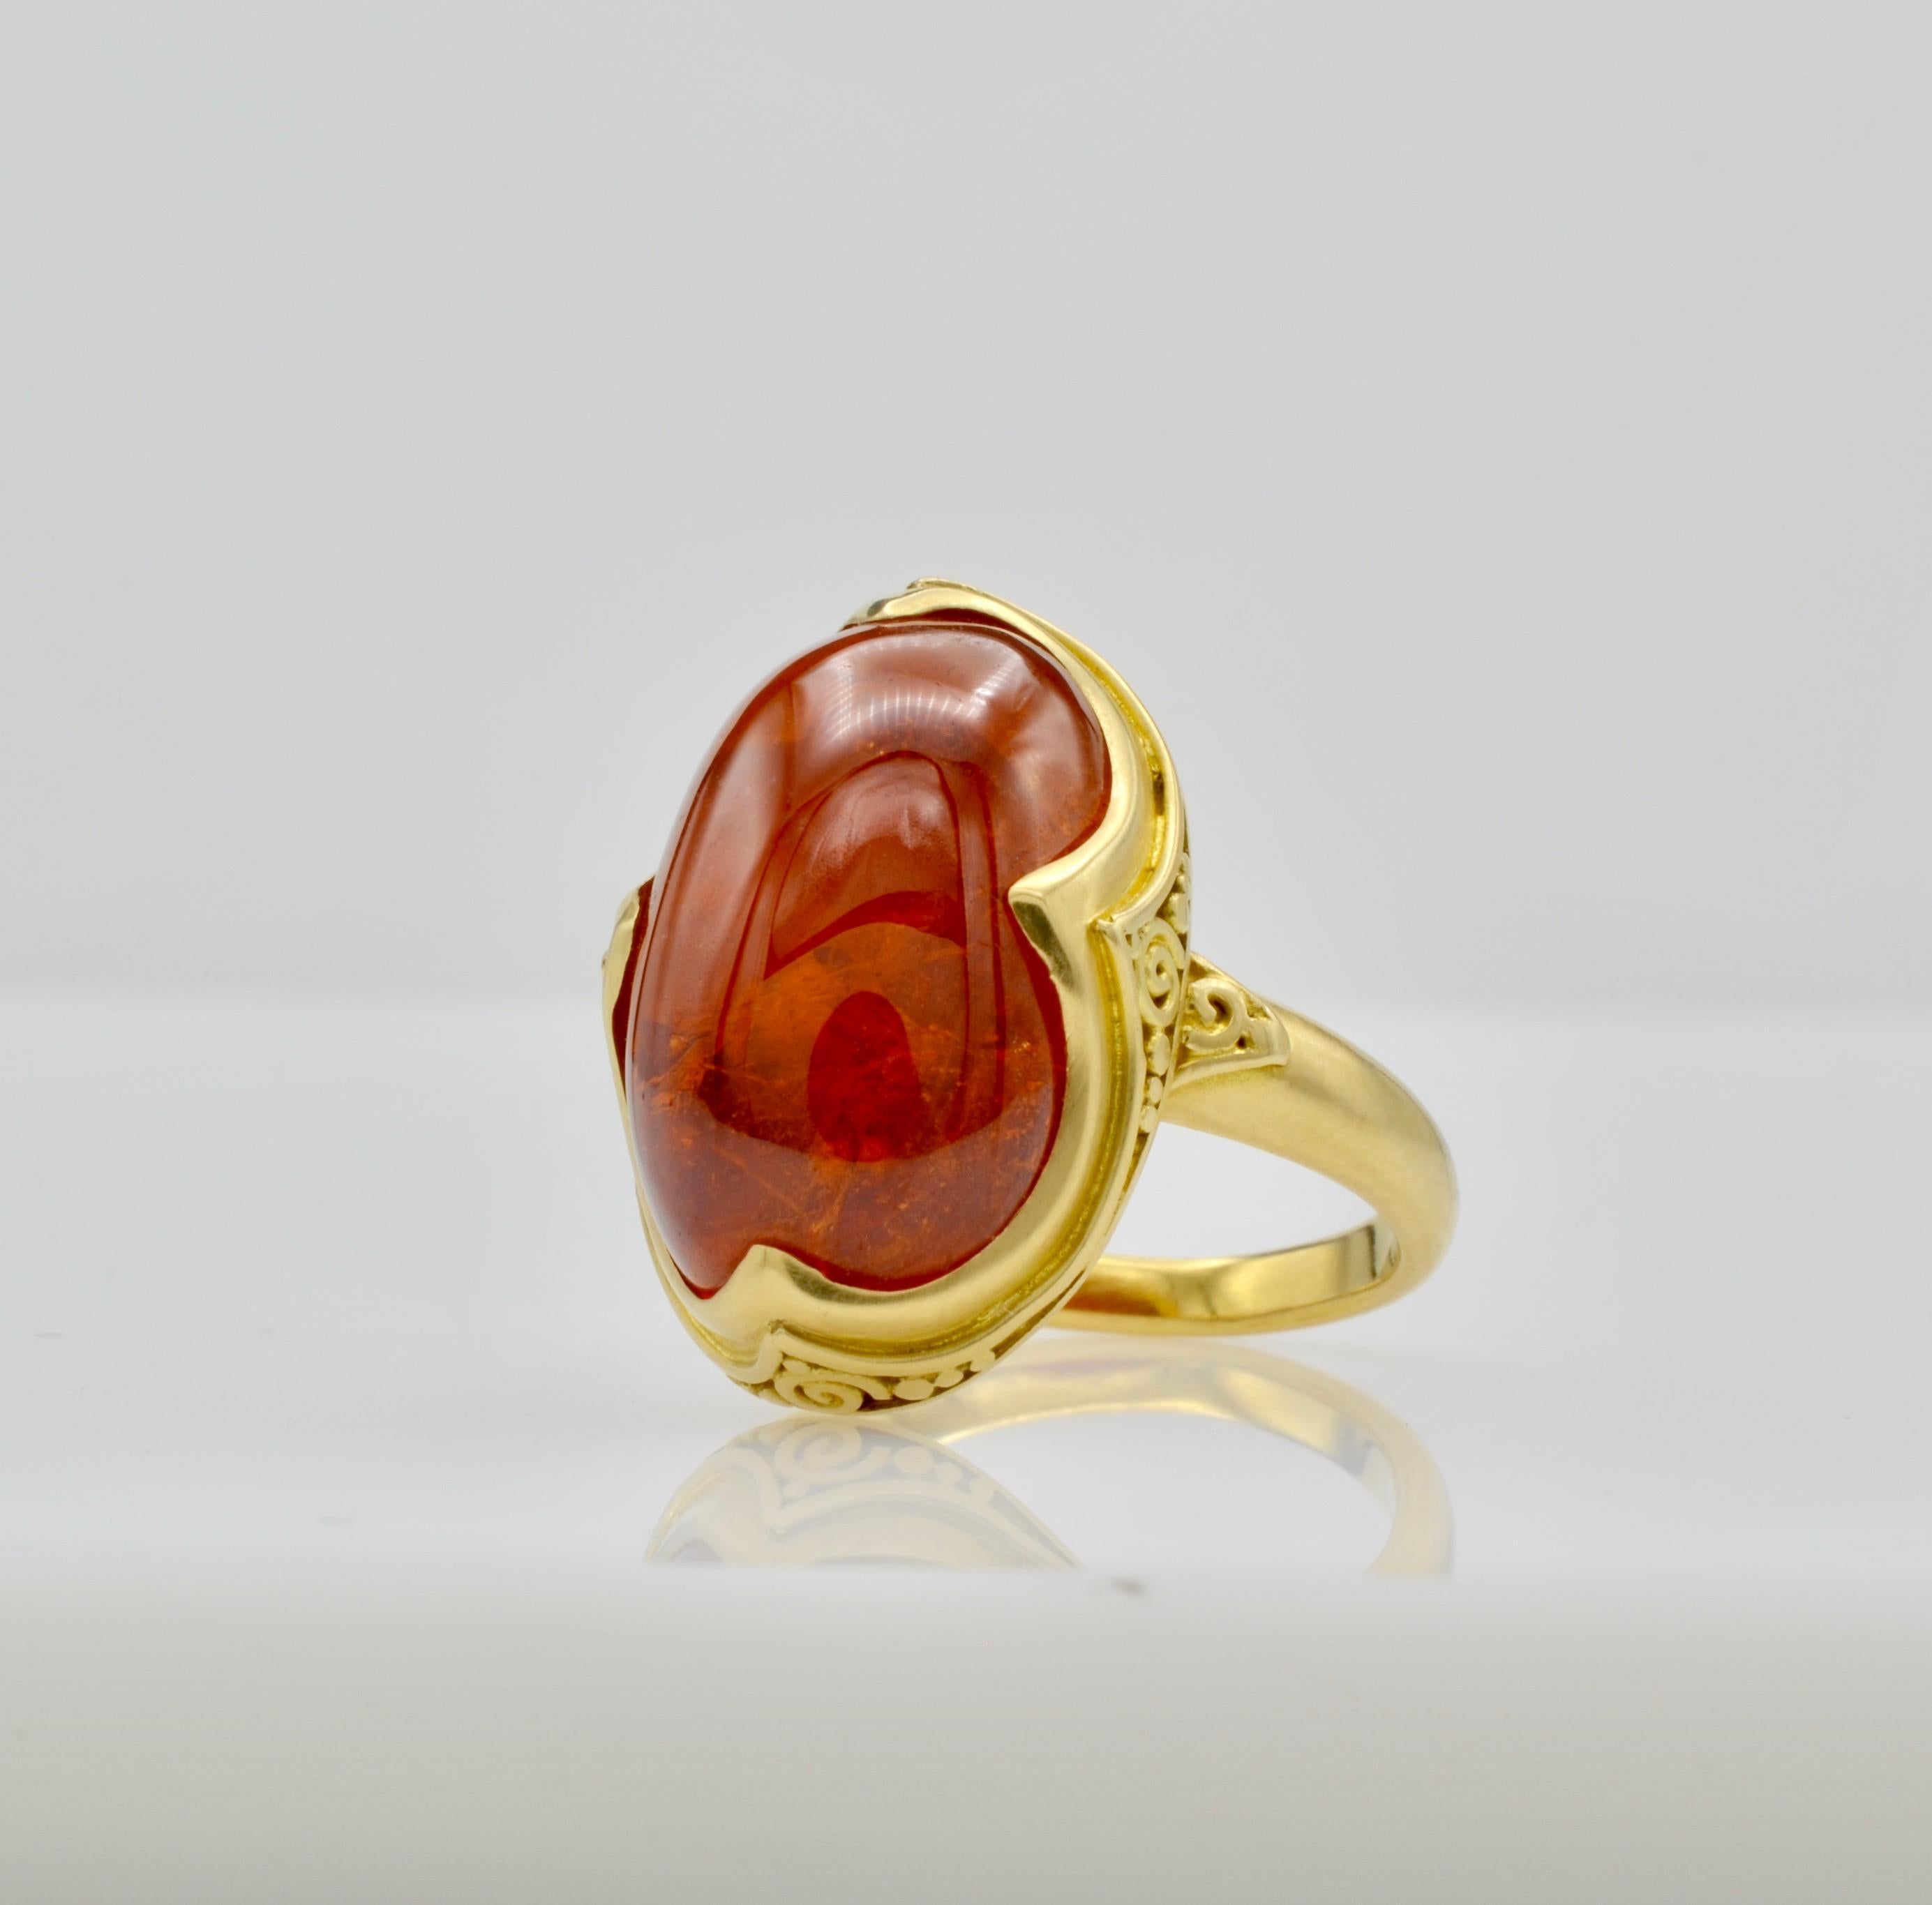 Questo anello con cabochon di tormalina arancione intenso, disegnato da Steven Battelle, ha un peso di circa 9,80 ct. e risplende dall'interno. L'incastonatura granulare in oro 18k incornicia splendidamente la pietra ovale. La misura dell'anello è 7